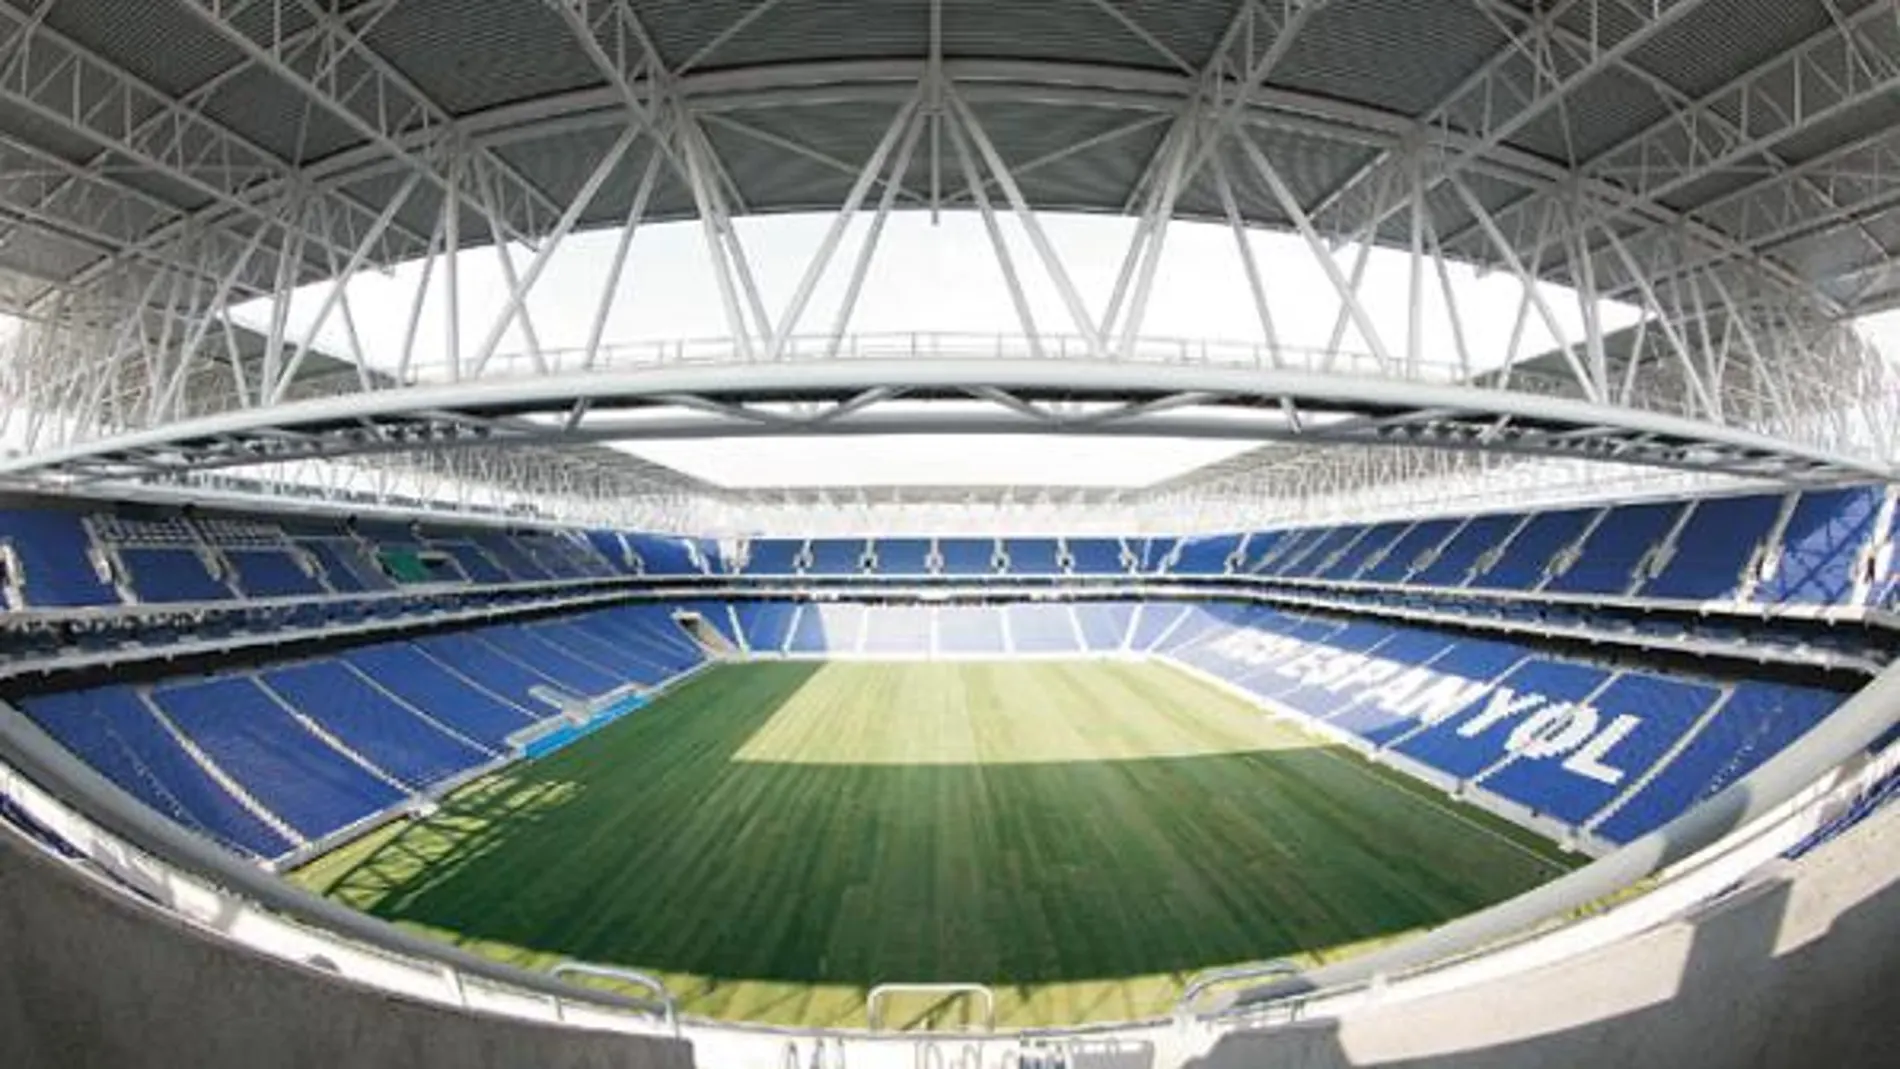 Vista del nuevo estadio del Espanyol, situado entre Cornellà y El Prat, desde uno de los fondos